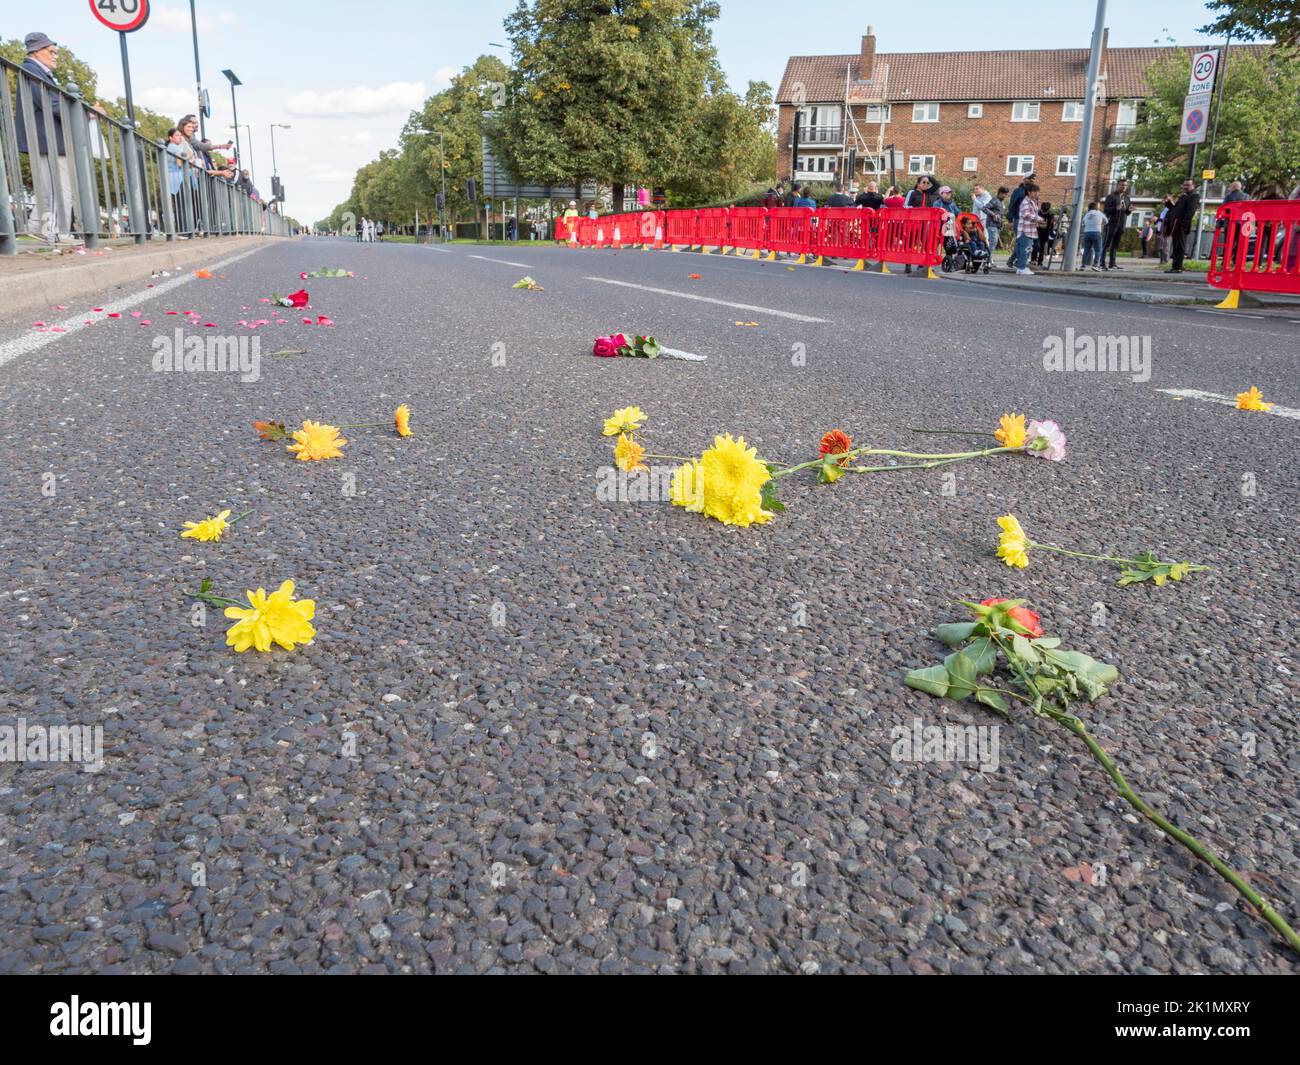 Fleurs laissées sur la route jetée au cœur de passage de la reine Elizabeth II, Londres, Royaume-Uni, sur son chemin vers son enterrement à la chapelle Saint-Georges, Château de Windosor, Royaume-Uni. Banque D'Images